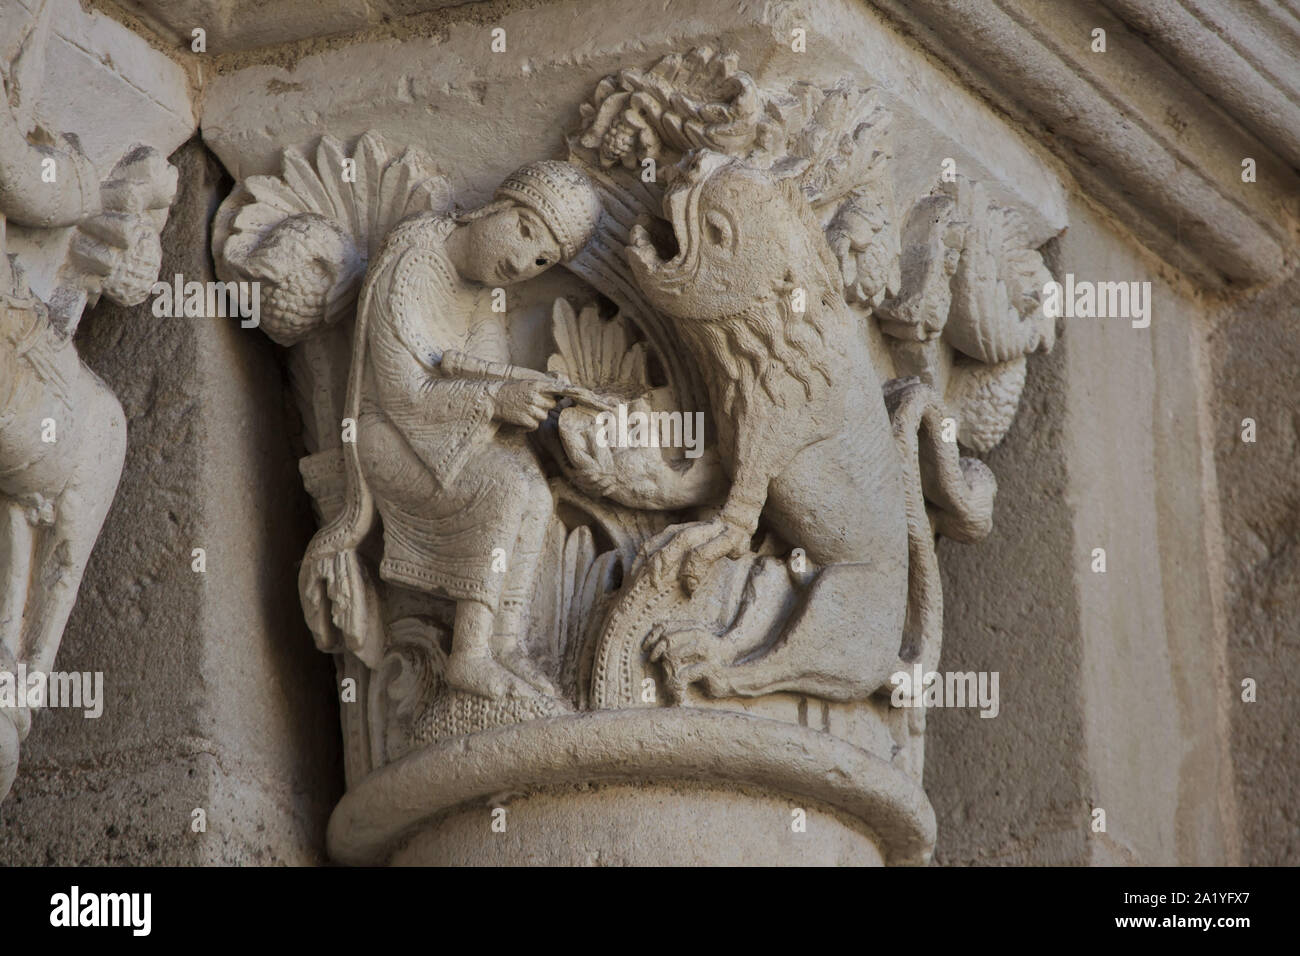 Saint Jérôme et le lion représenté dans la capitale romane datée du 12ème siècle sur le portail ouest de la cathédrale d'Autun (Cathédrale Saint-Lazare d'Autun) à Autun, Bourgogne, France. La capitale a été probablement sculpté par le sculpteur roman français de Gislebertus. Banque D'Images